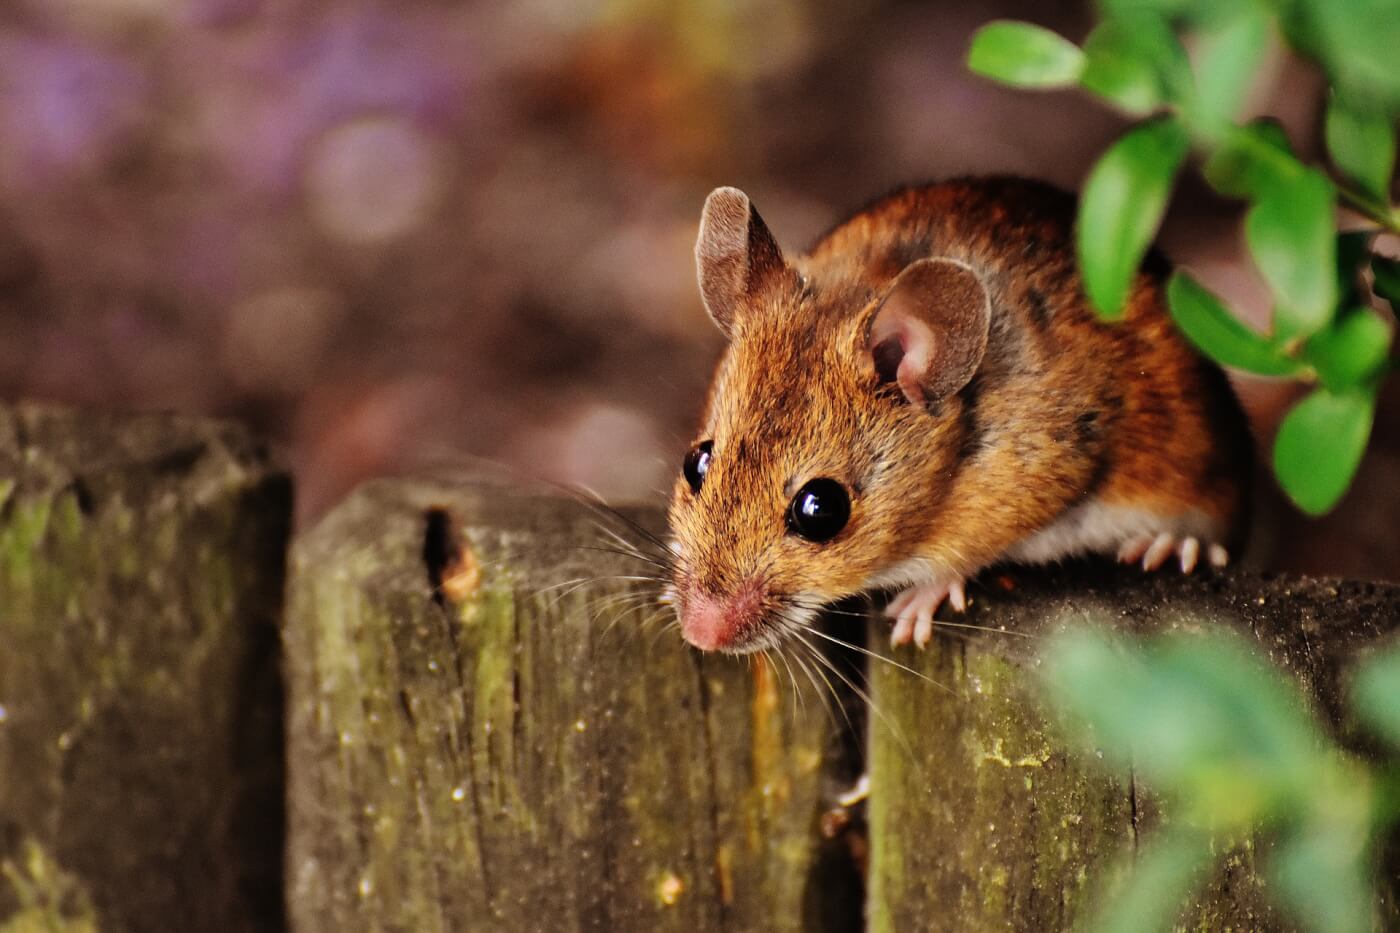 Handleiding voor het humaan verwijderen van muizen: 9 stappen voor een knaagdiervrij huis